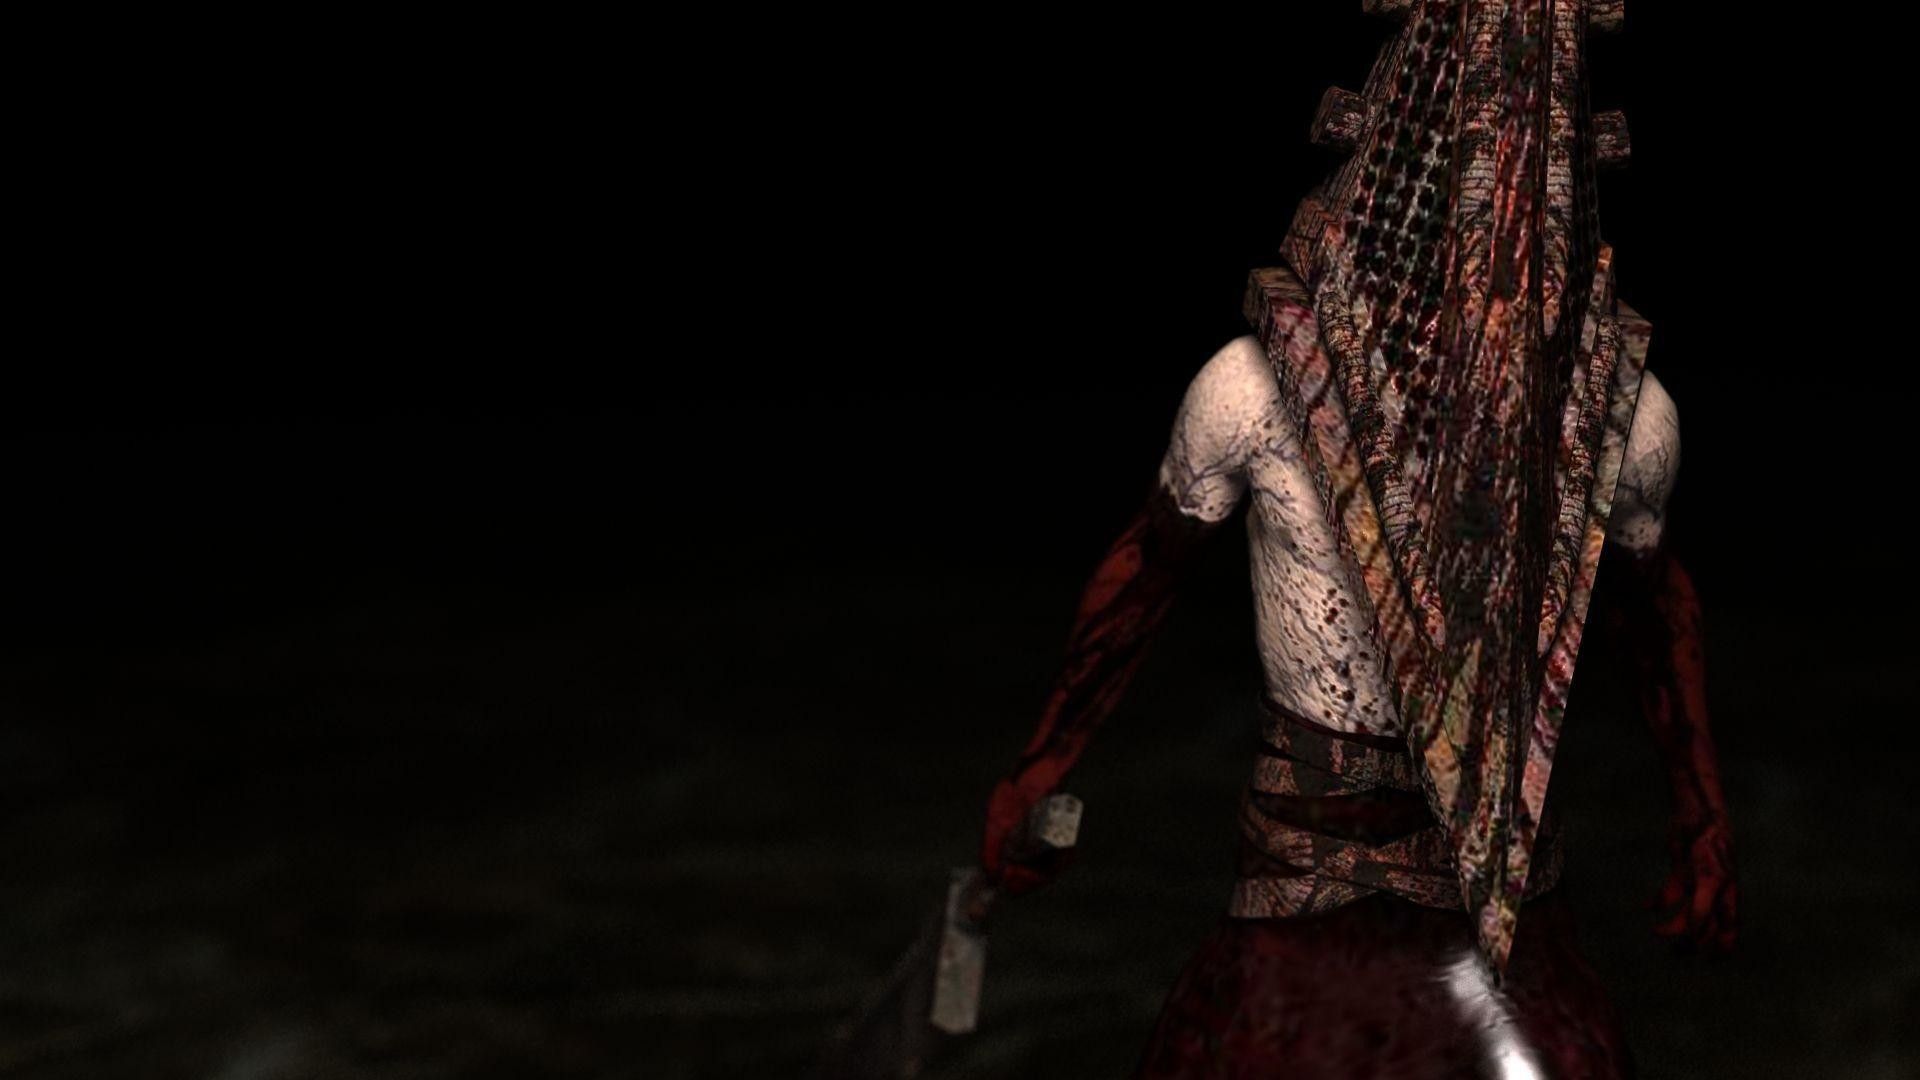 Silent Hill Clássico Filme De Terror Qualidade Arte Da Parede